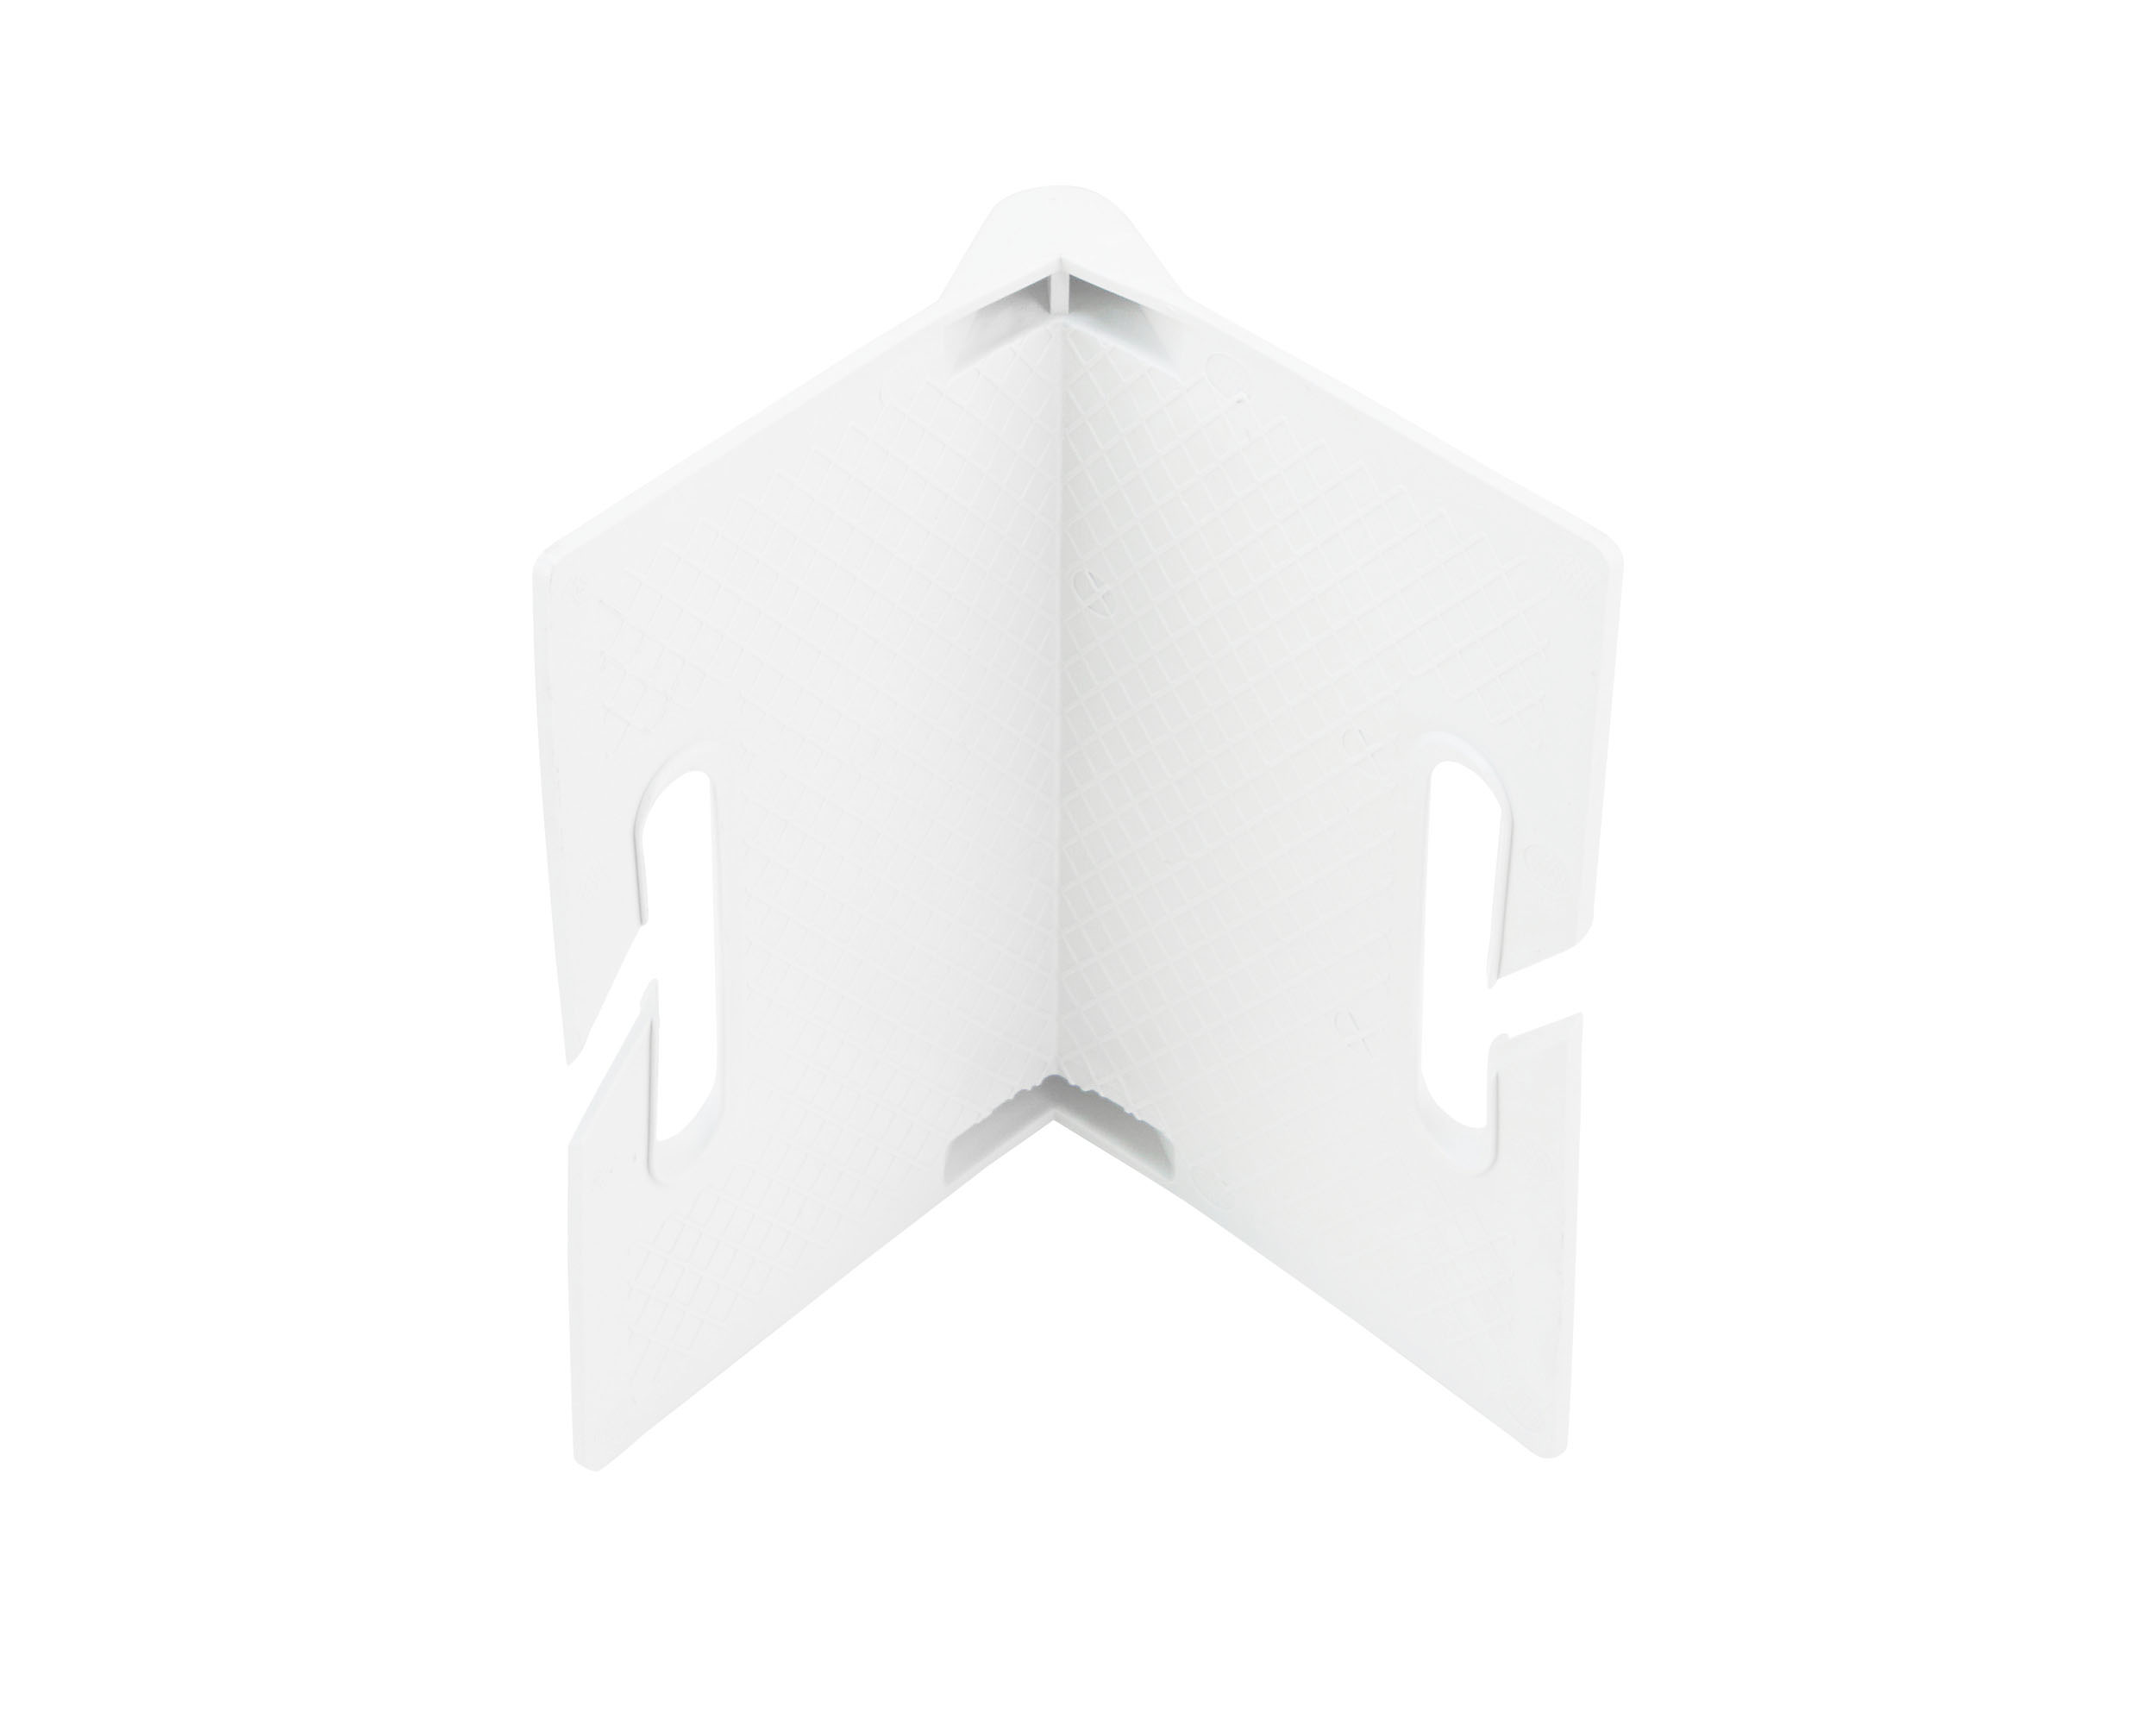 Kantenschutzecke Kantenschutzwinkel, weiß, Kunststoff 135 x 90